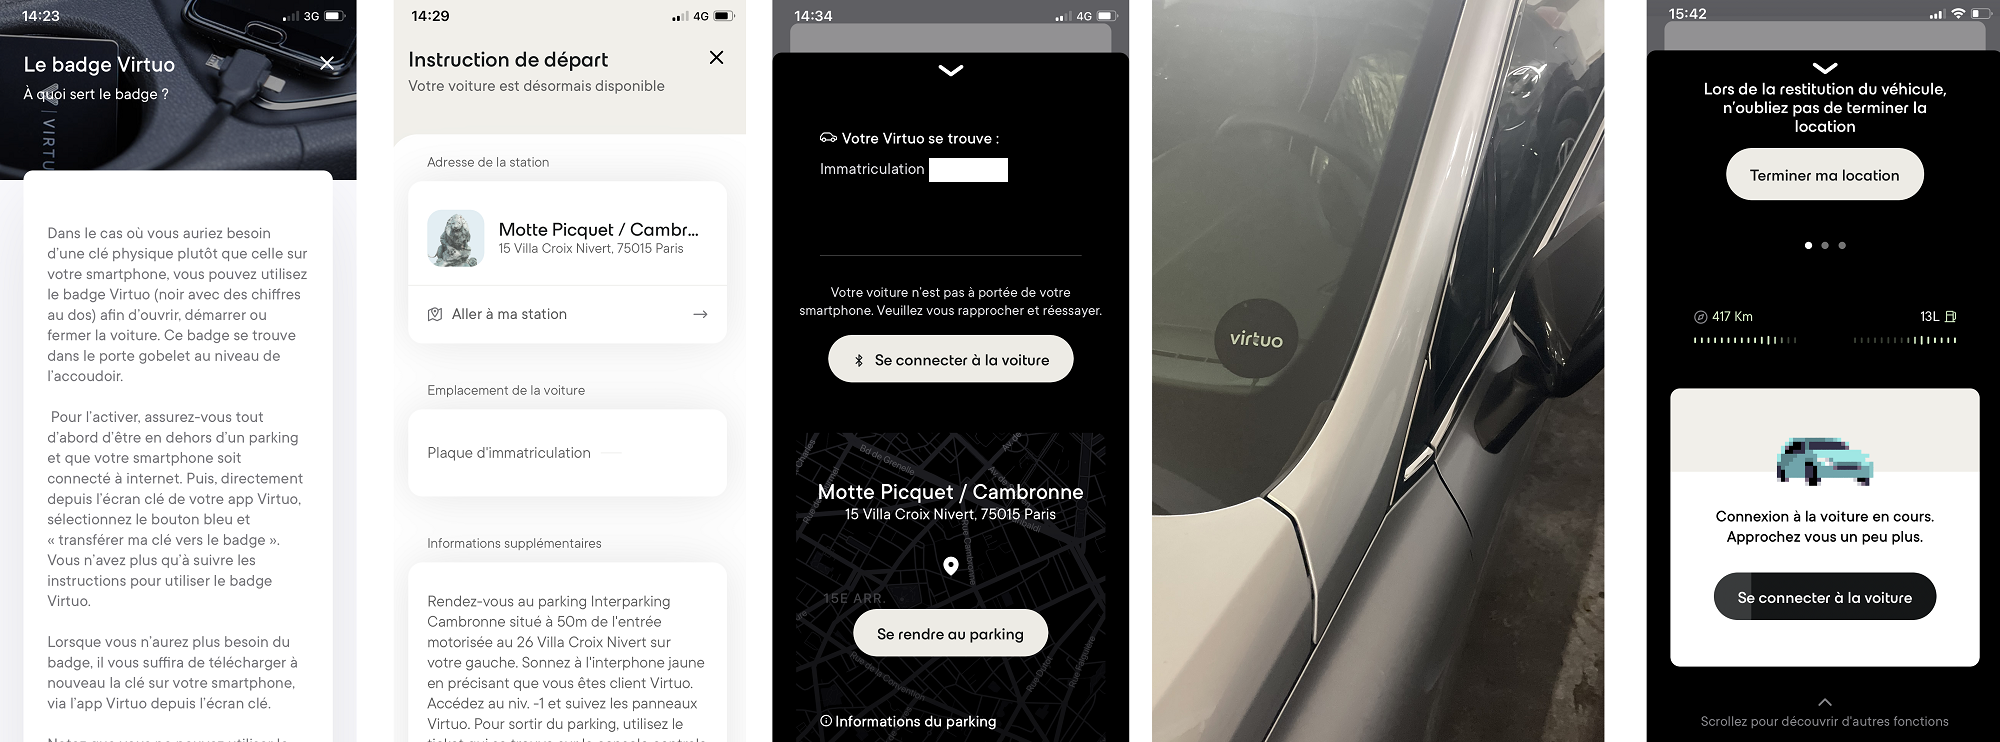 Virtuo, une App bien pensée pour la location de voiture avec une absence d’humain qui peut être problématique dans certains cas